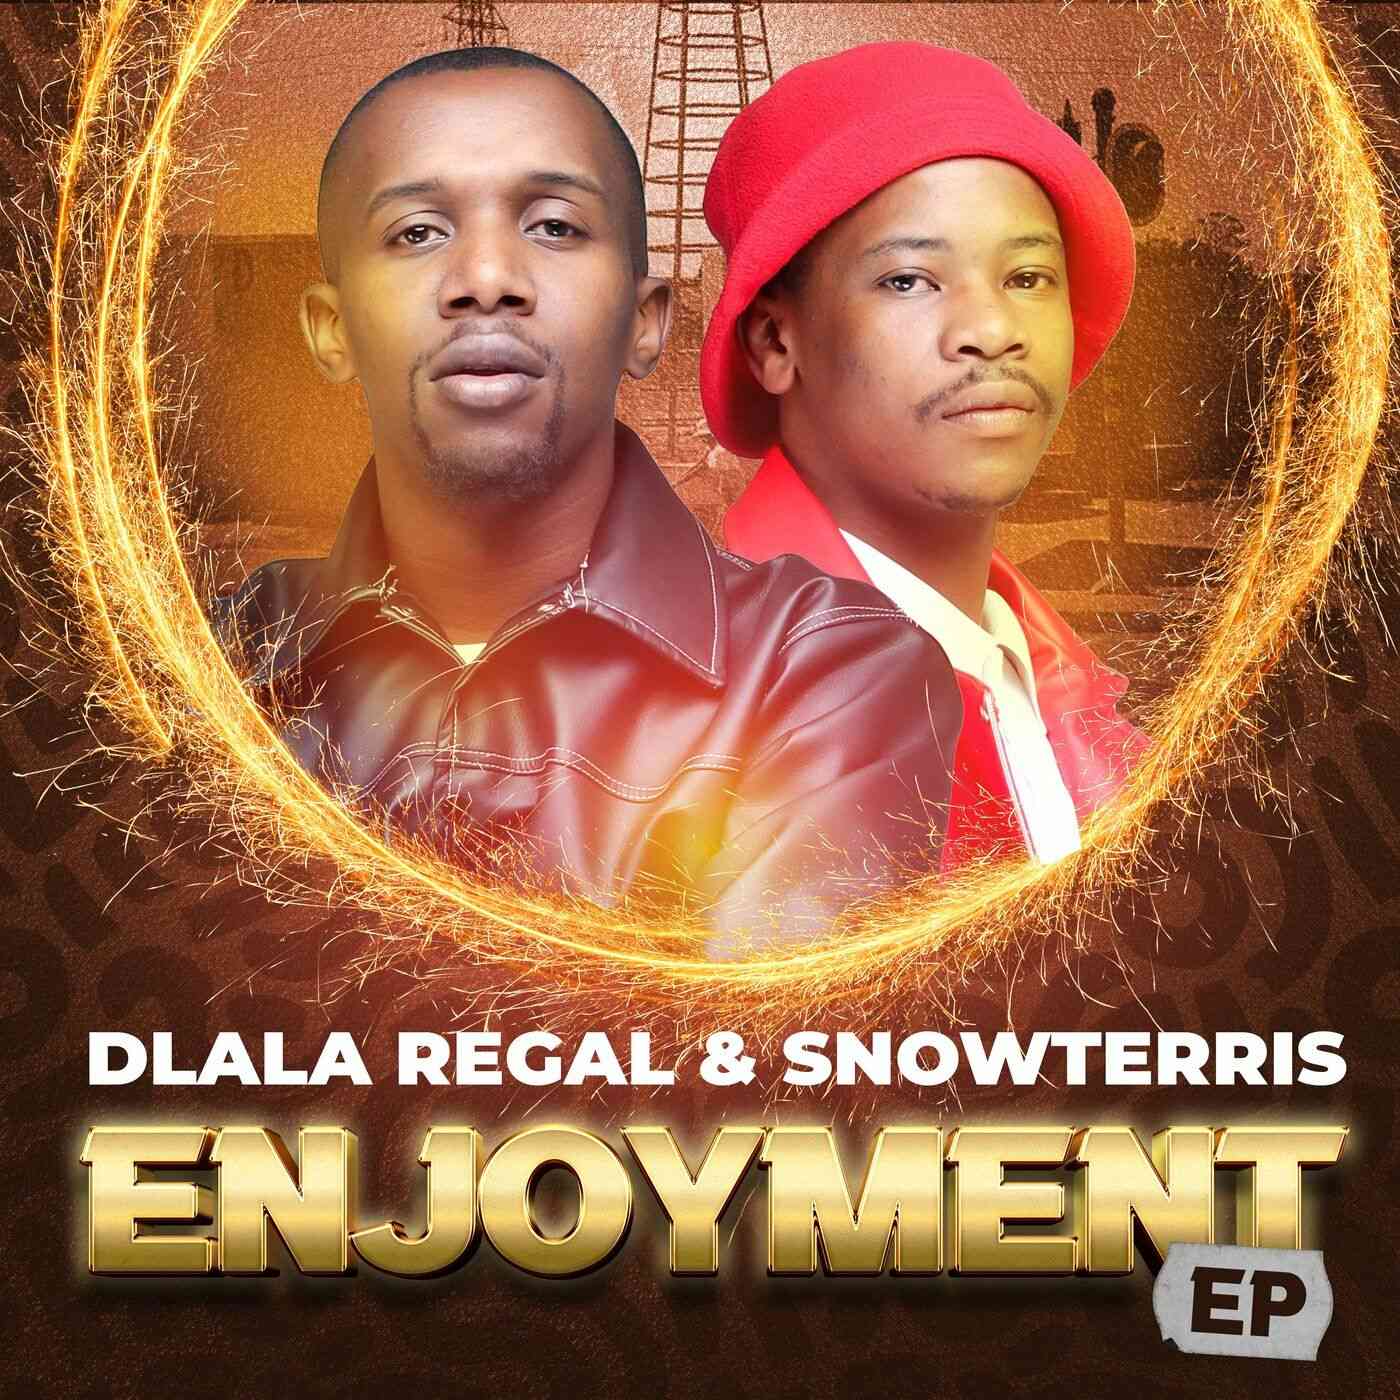 Dlala Regal & SnowTerris Enjoyment EP